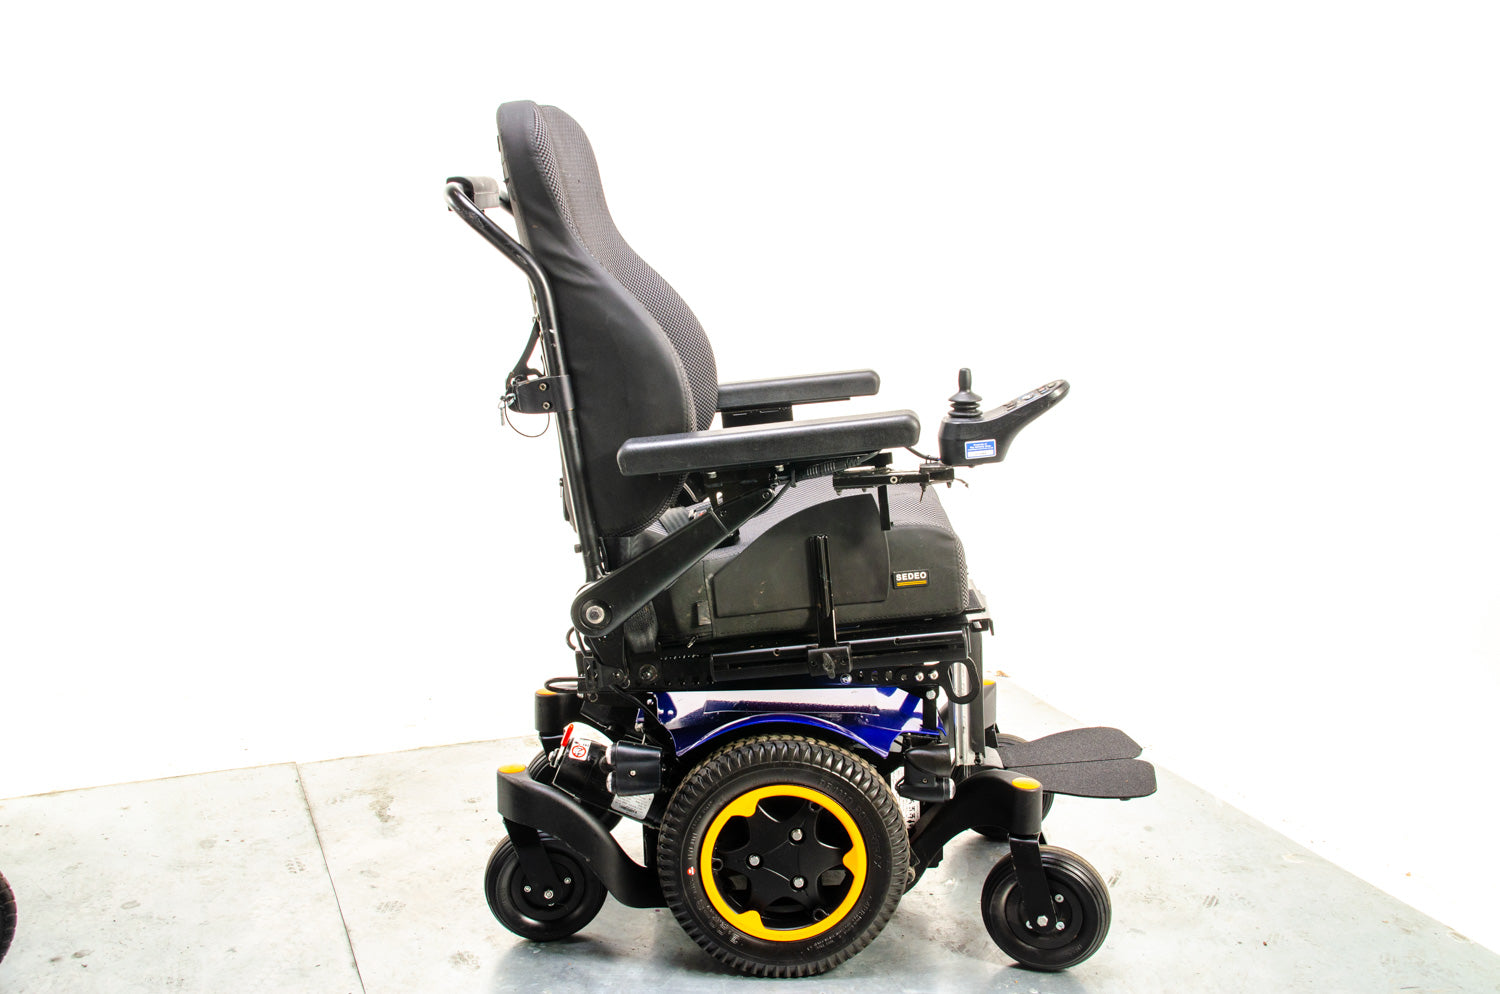 Quickie Q300 M Mini Powerchair Wheelchair Sedeo Narrow Compact Agile MWD Sunrise Medical